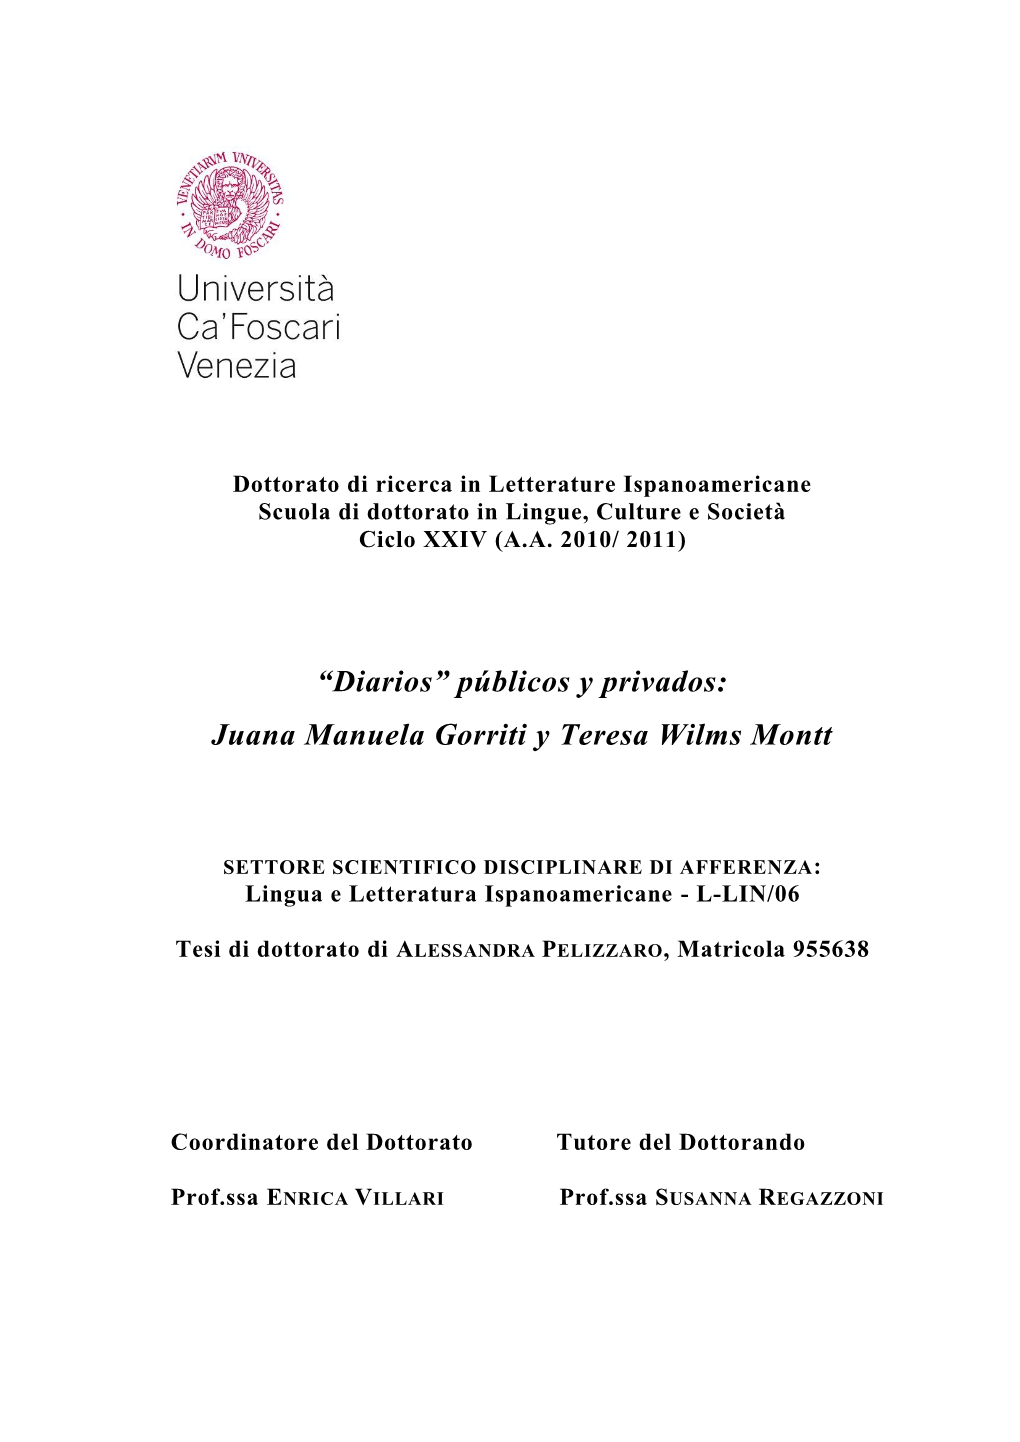 Públicos Y Privados: Juana Manuela Gorriti Y Teresa Wilms Montt